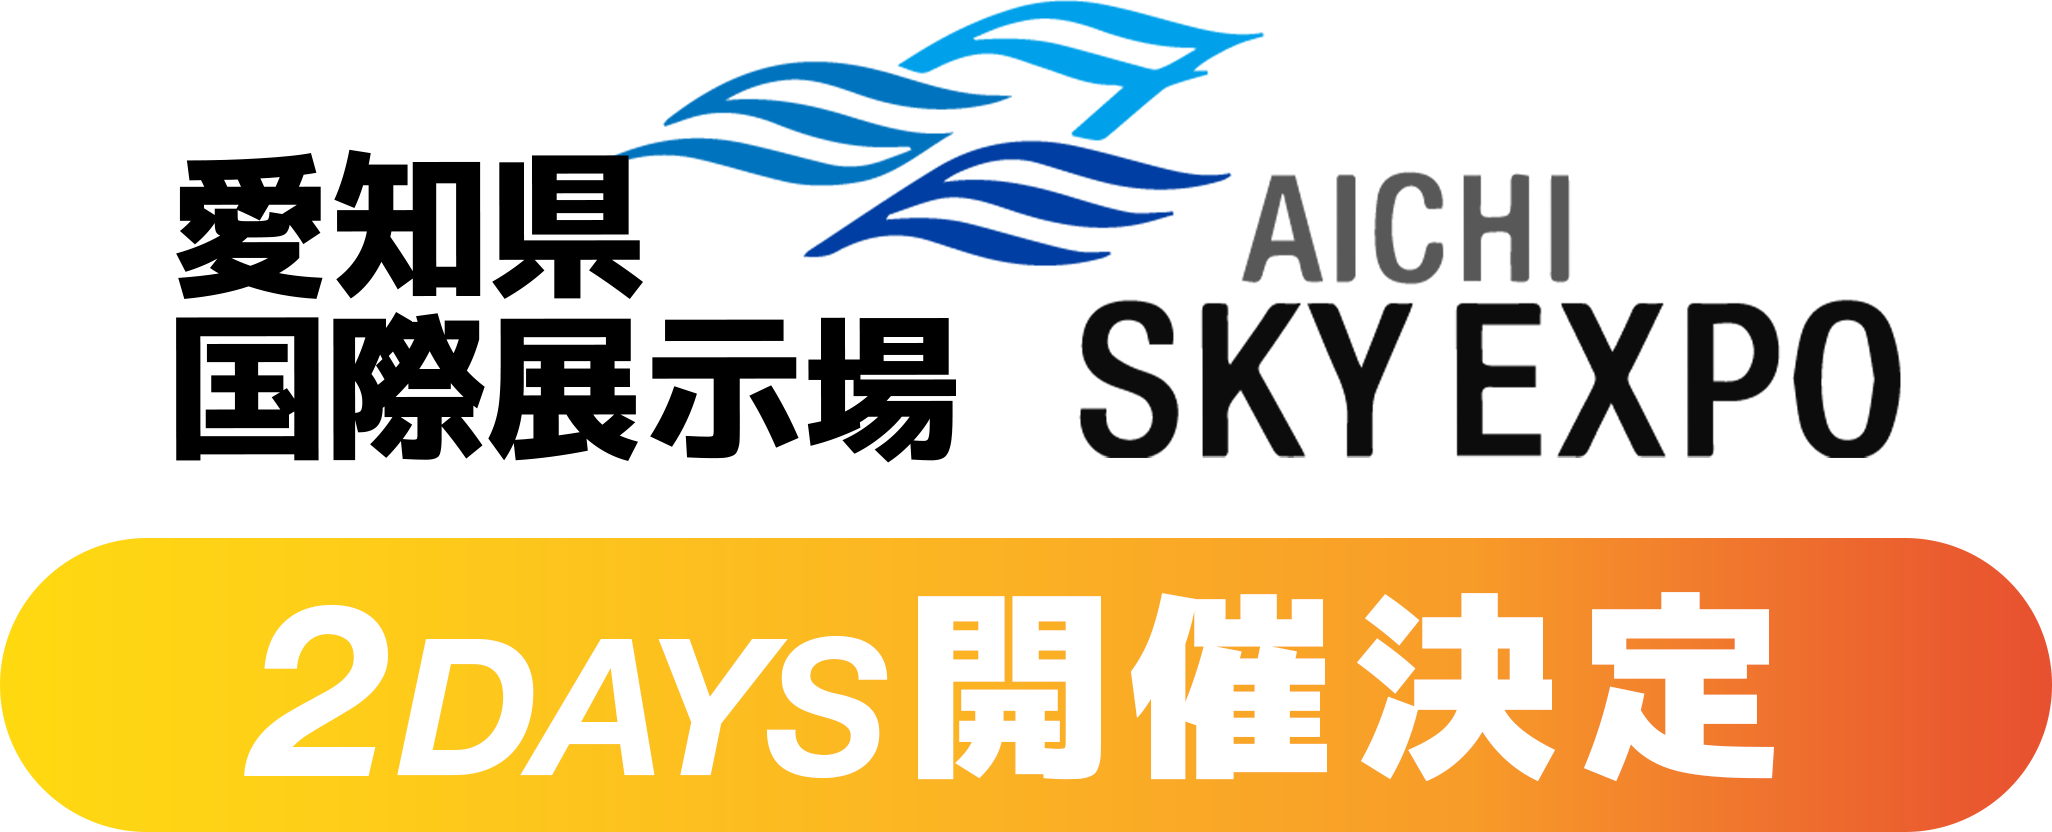 愛知県国際展示場 (Aichi Sky Expo) 2Days開催決定